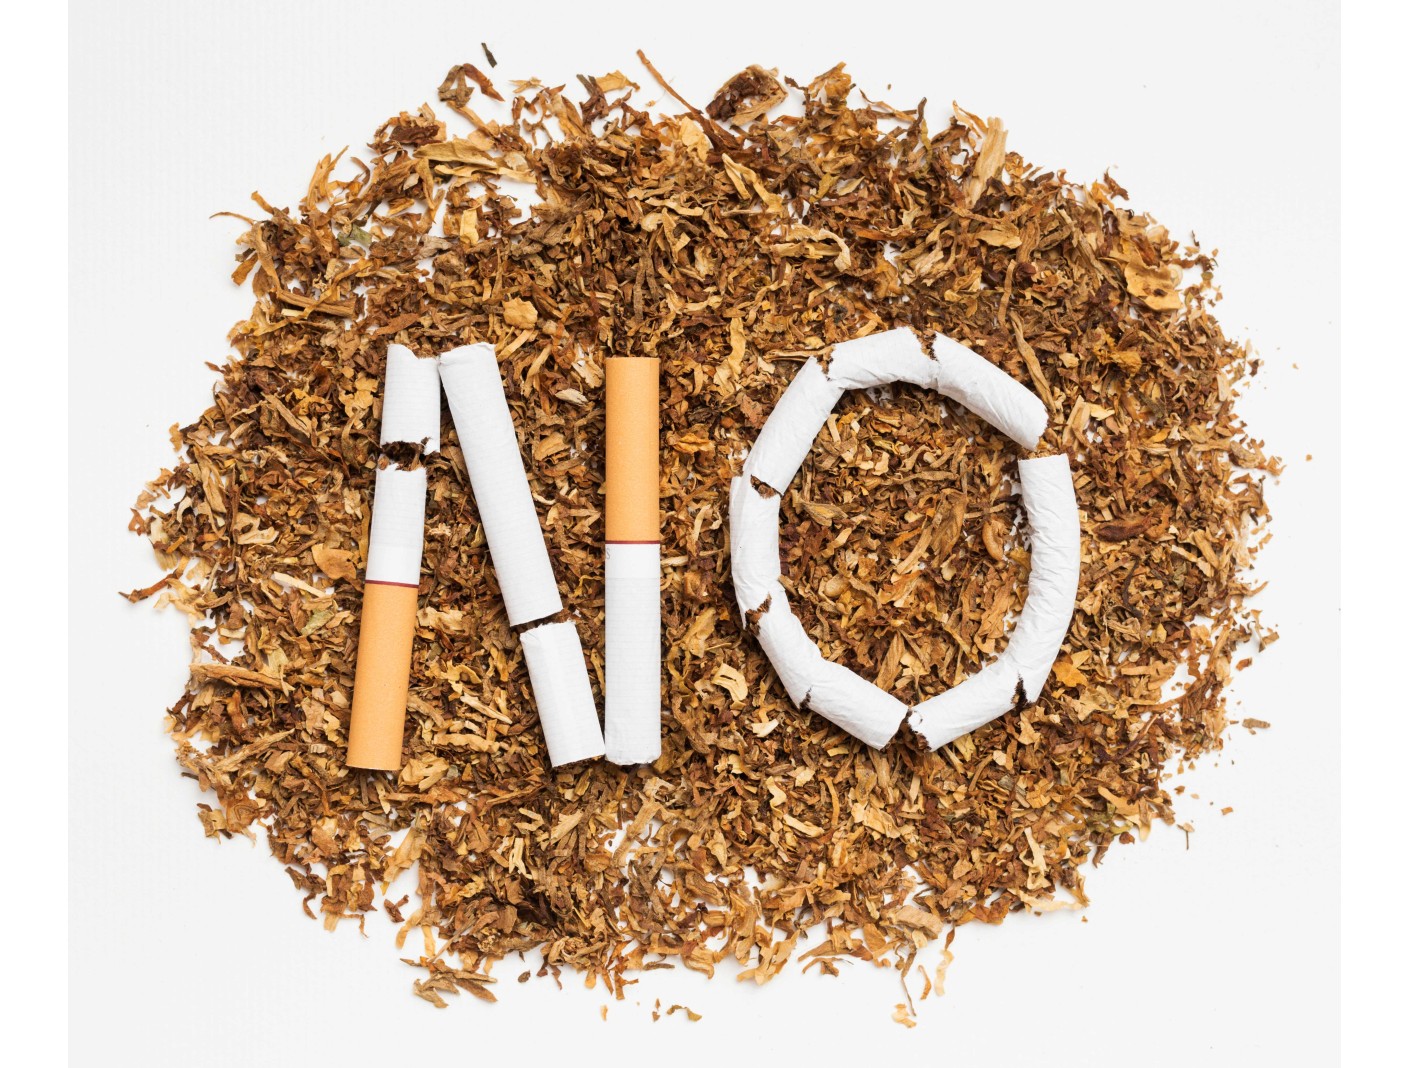 Cigarrillos herbales y sus beneficios sicológicos, fisiológicos y sociales